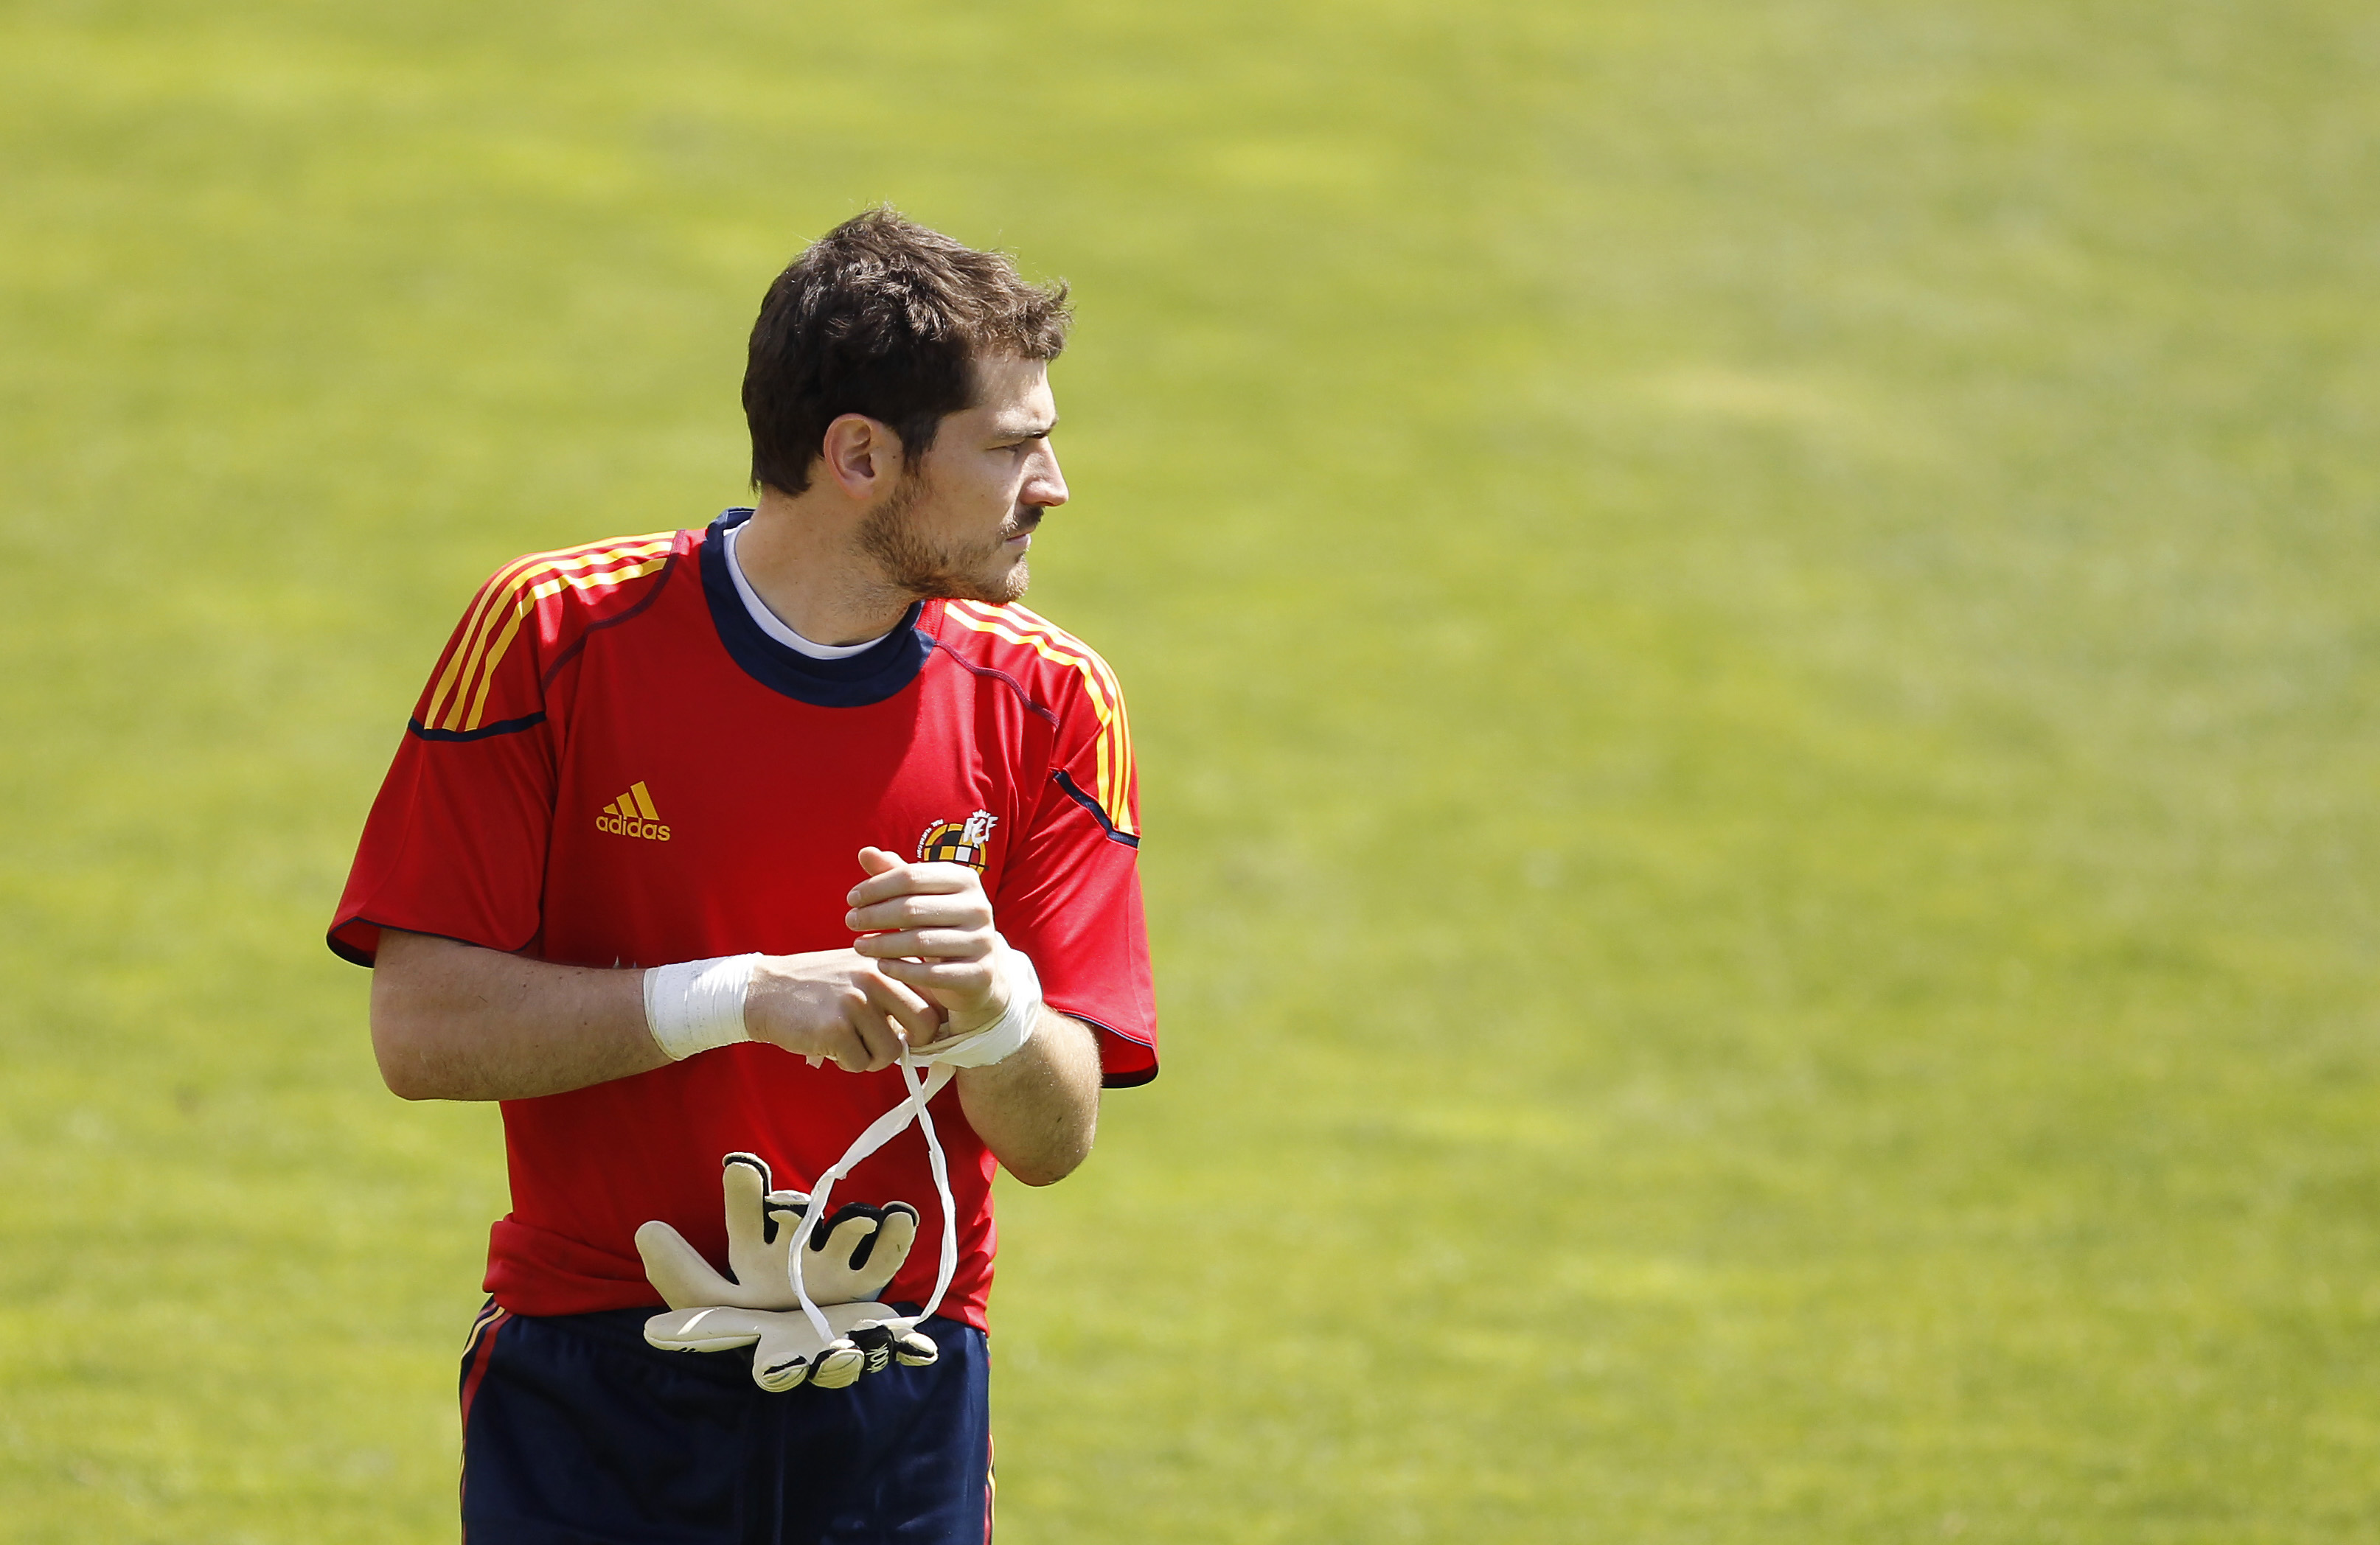 En odmjuk Iker Casillas betoner vikten av att behålla fötterna på jorden.